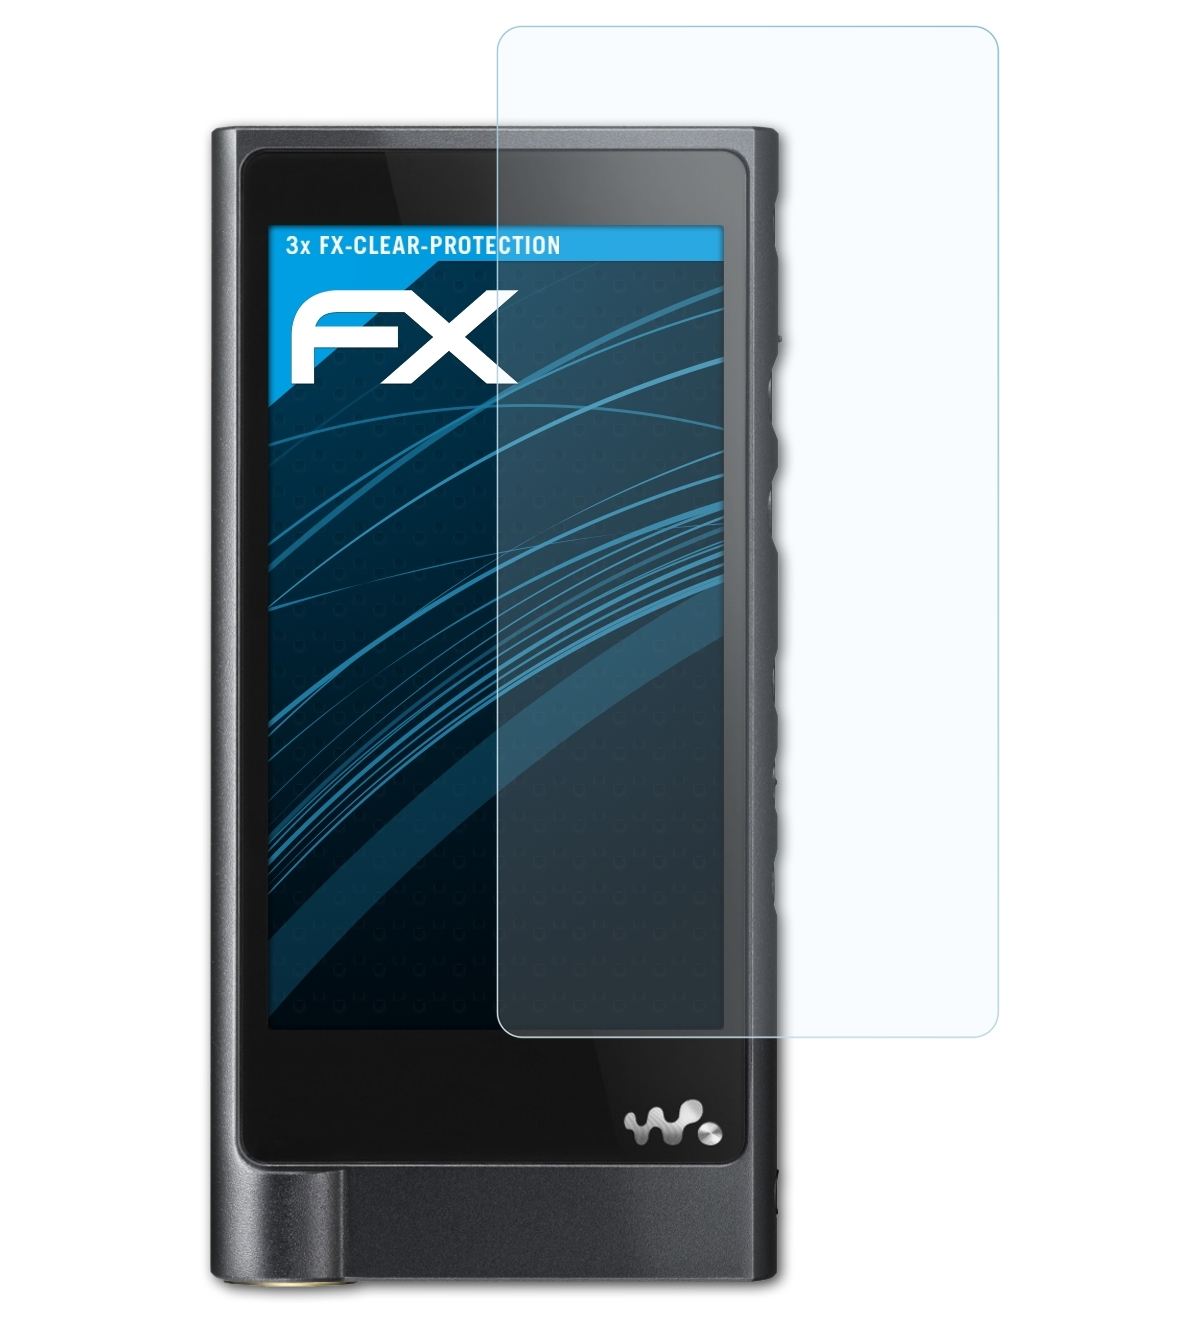 ATFOLIX 3x Sony NW-ZX2) Displayschutz(für FX-Clear Walkman